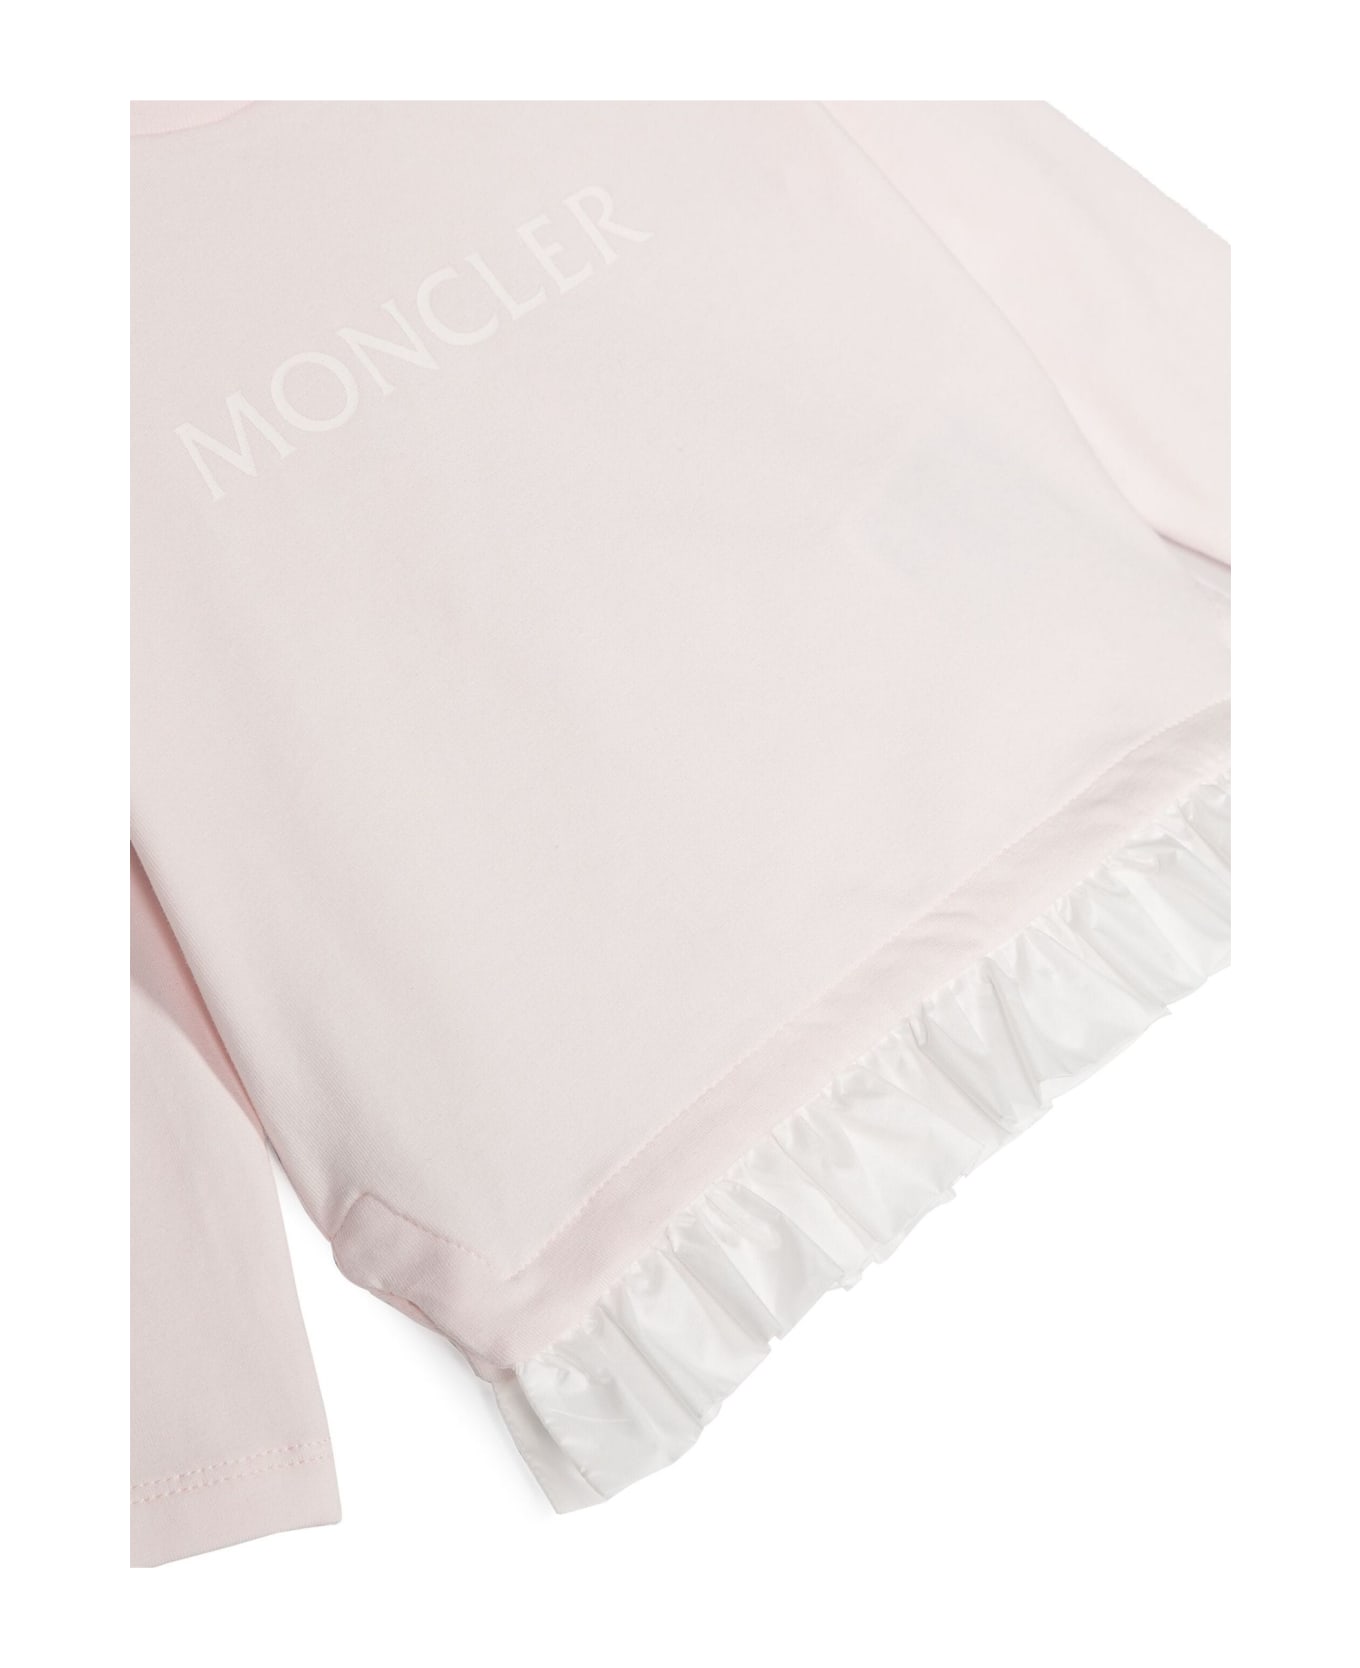 Moncler New Maya T-shirts And Polos Pink - Pink